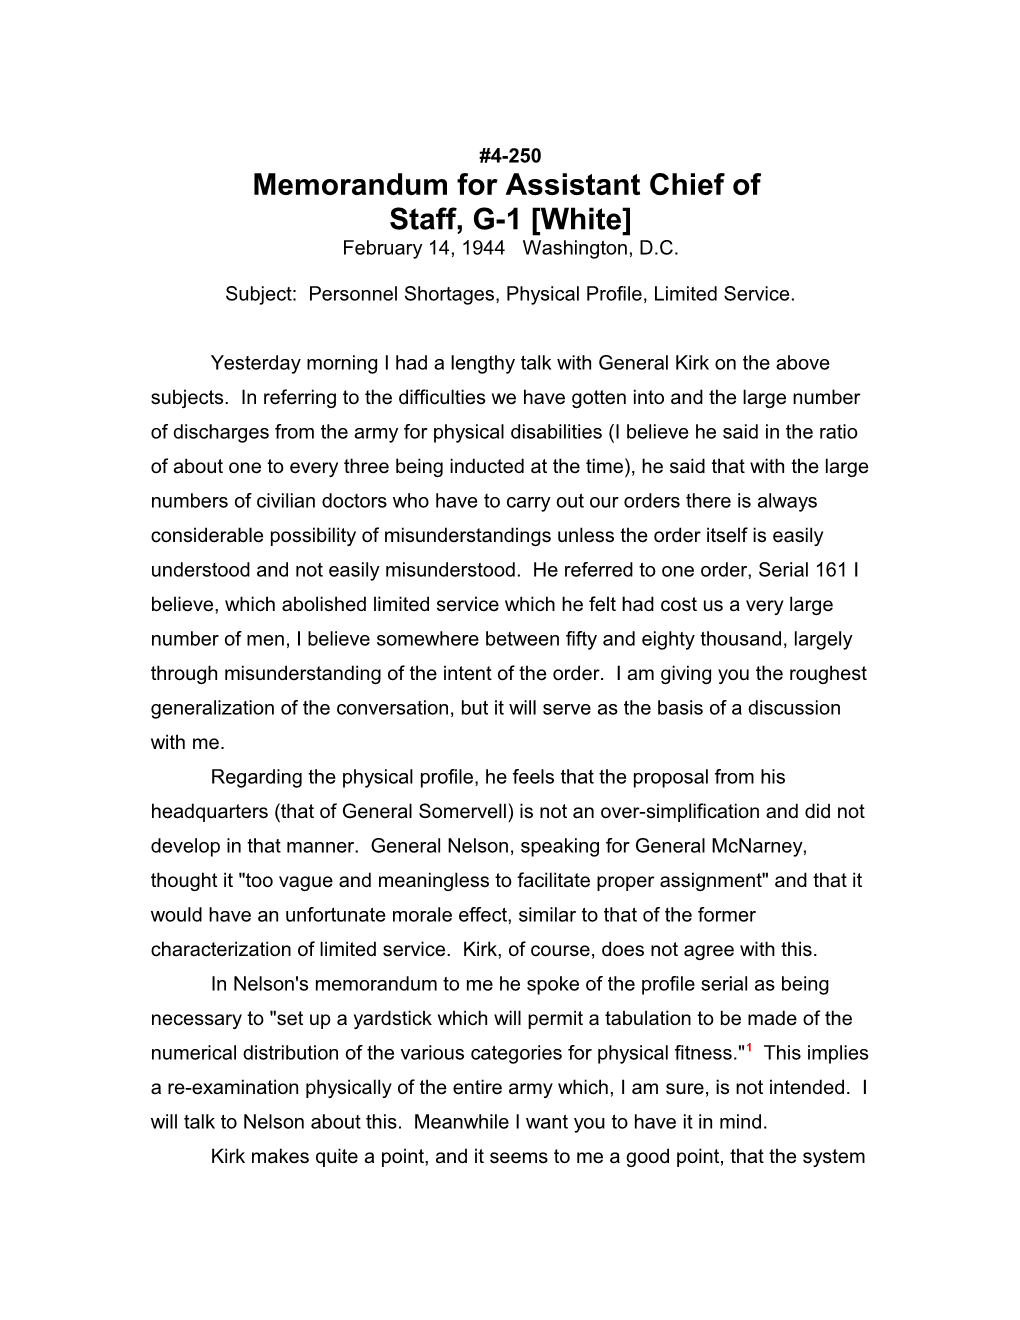 Memorandum for Assistant Chief Of